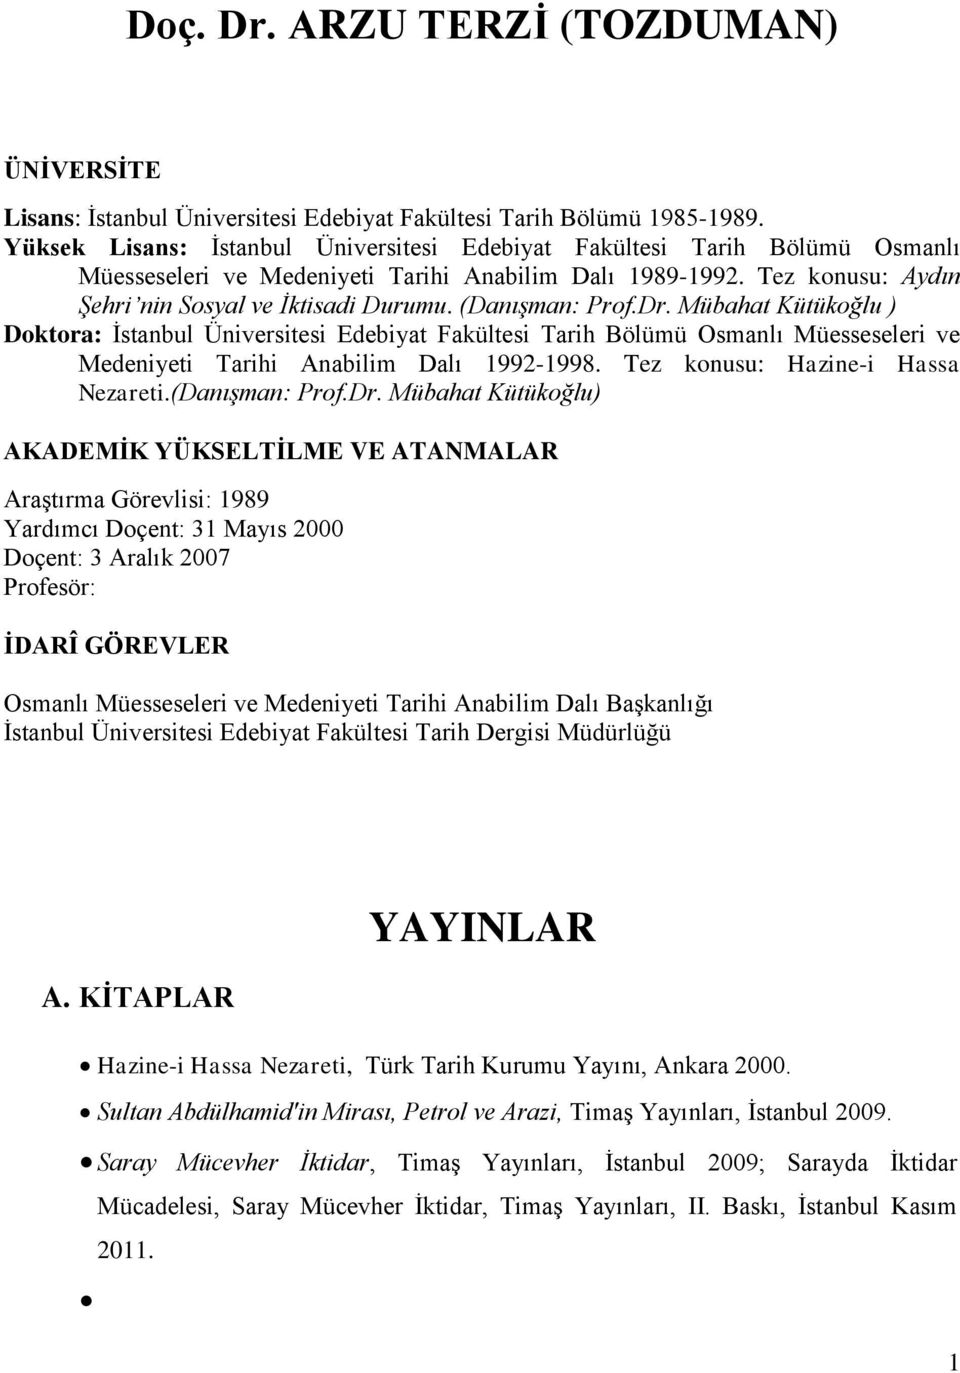 (Danışman: Prof.Dr. Mübahat Kütükoğlu ) Doktora: İstanbul Üniversitesi Edebiyat Fakültesi Tarih Bölümü Osmanlı Müesseseleri ve Medeniyeti Tarihi Anabilim Dalı 1992-1998.